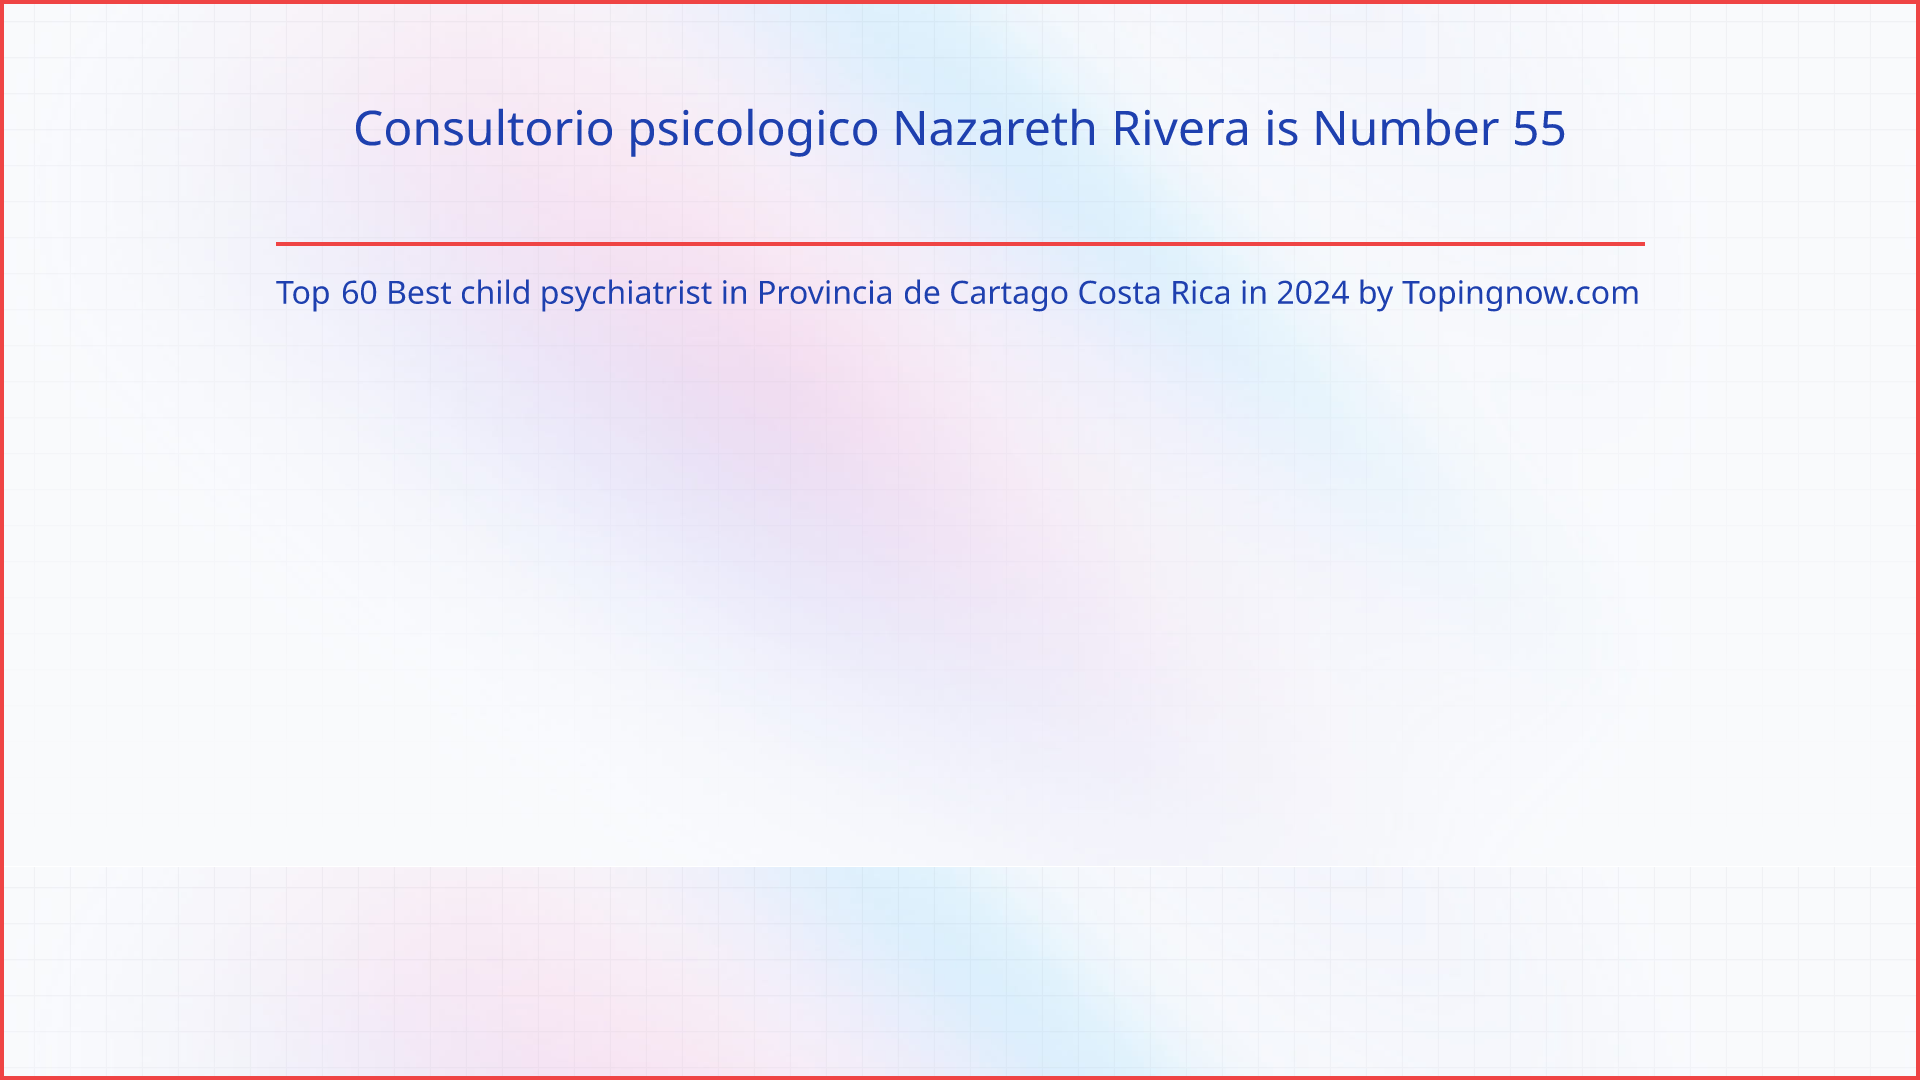 Consultorio psicologico Nazareth Rivera: Top 60 Best child psychiatrist in Provincia de Cartago Costa Rica in 2024